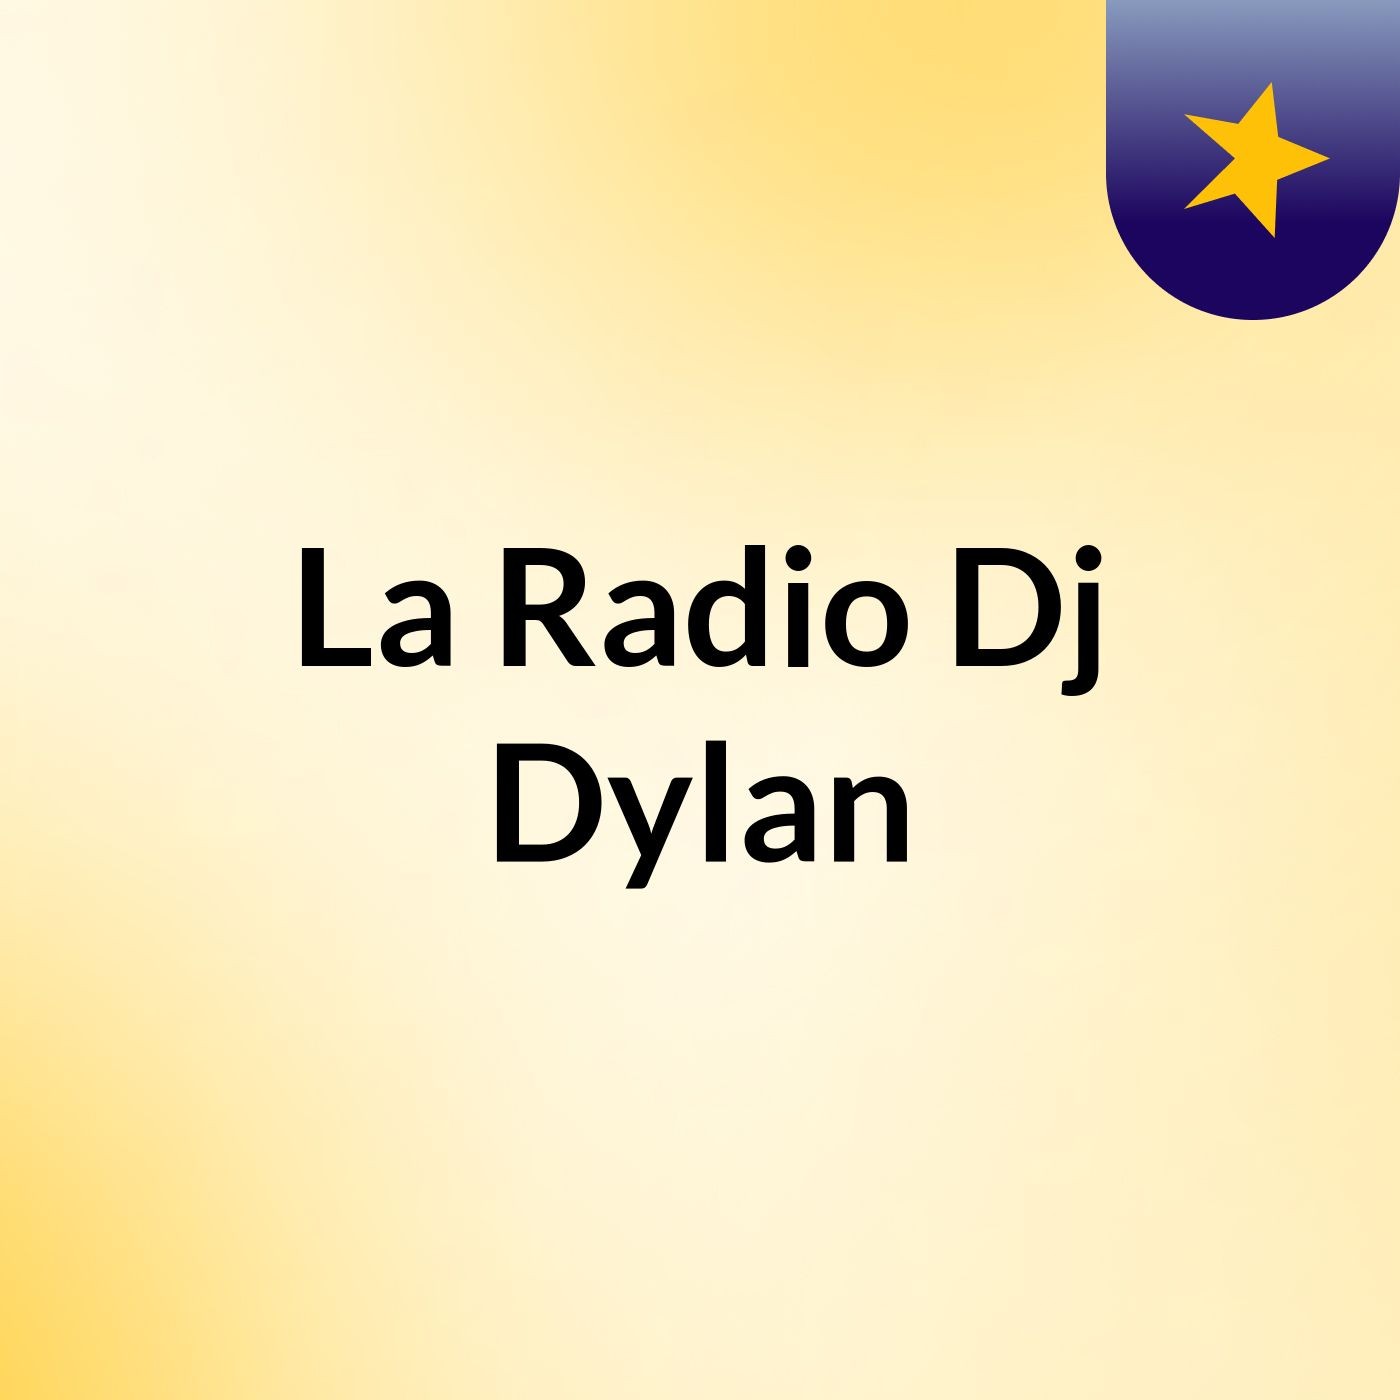 La Radio Dj Dylan